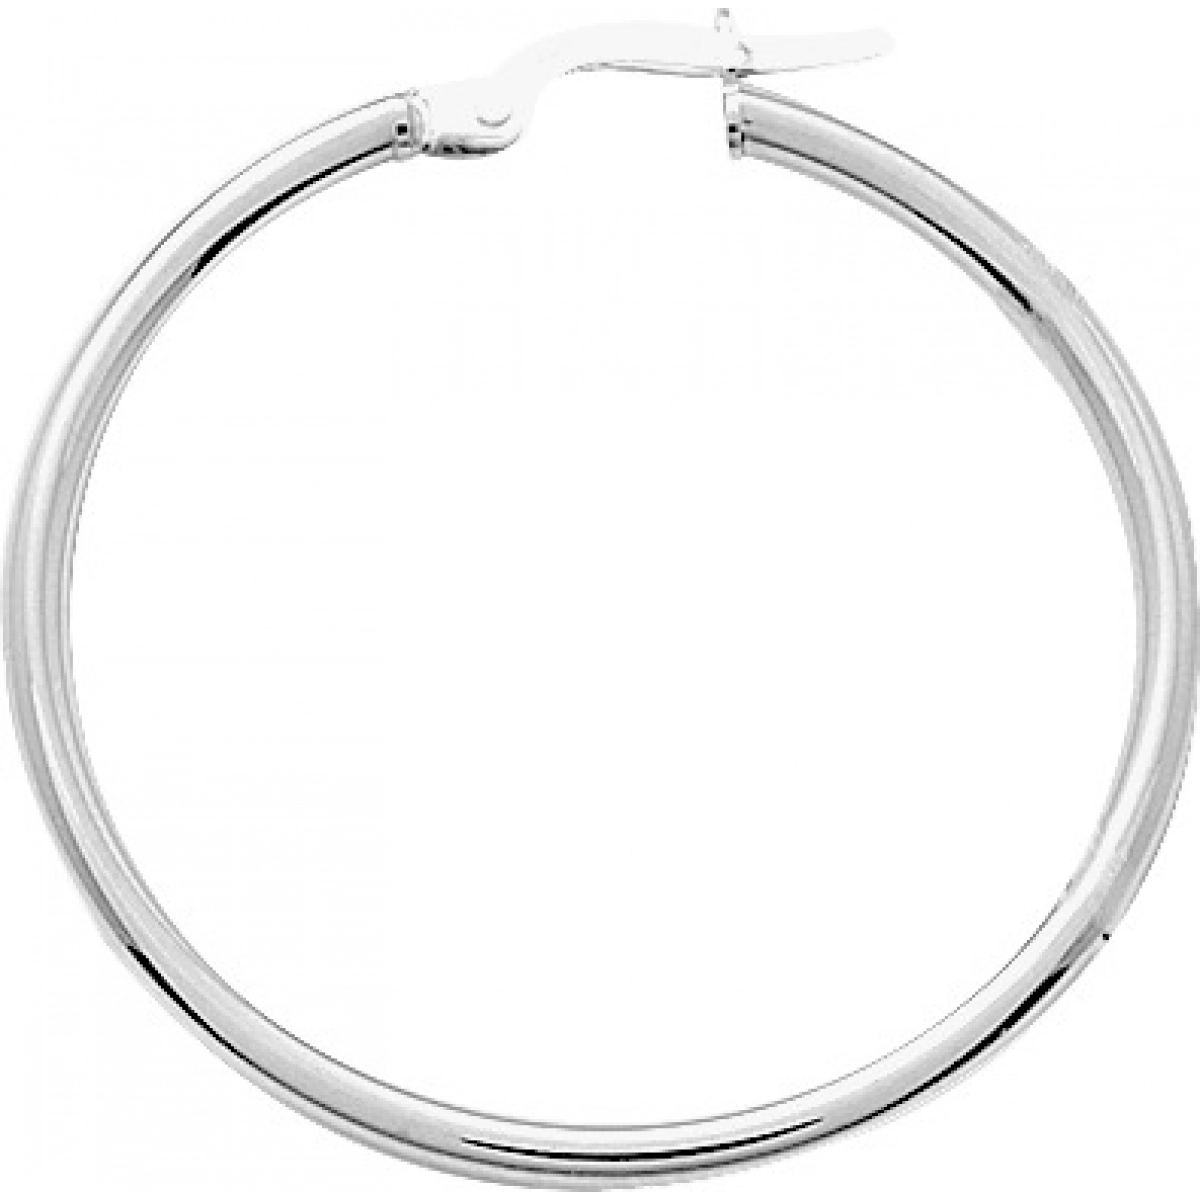 Hoops earrings pair 18K WG  Lua Blanca  2535.6G.0